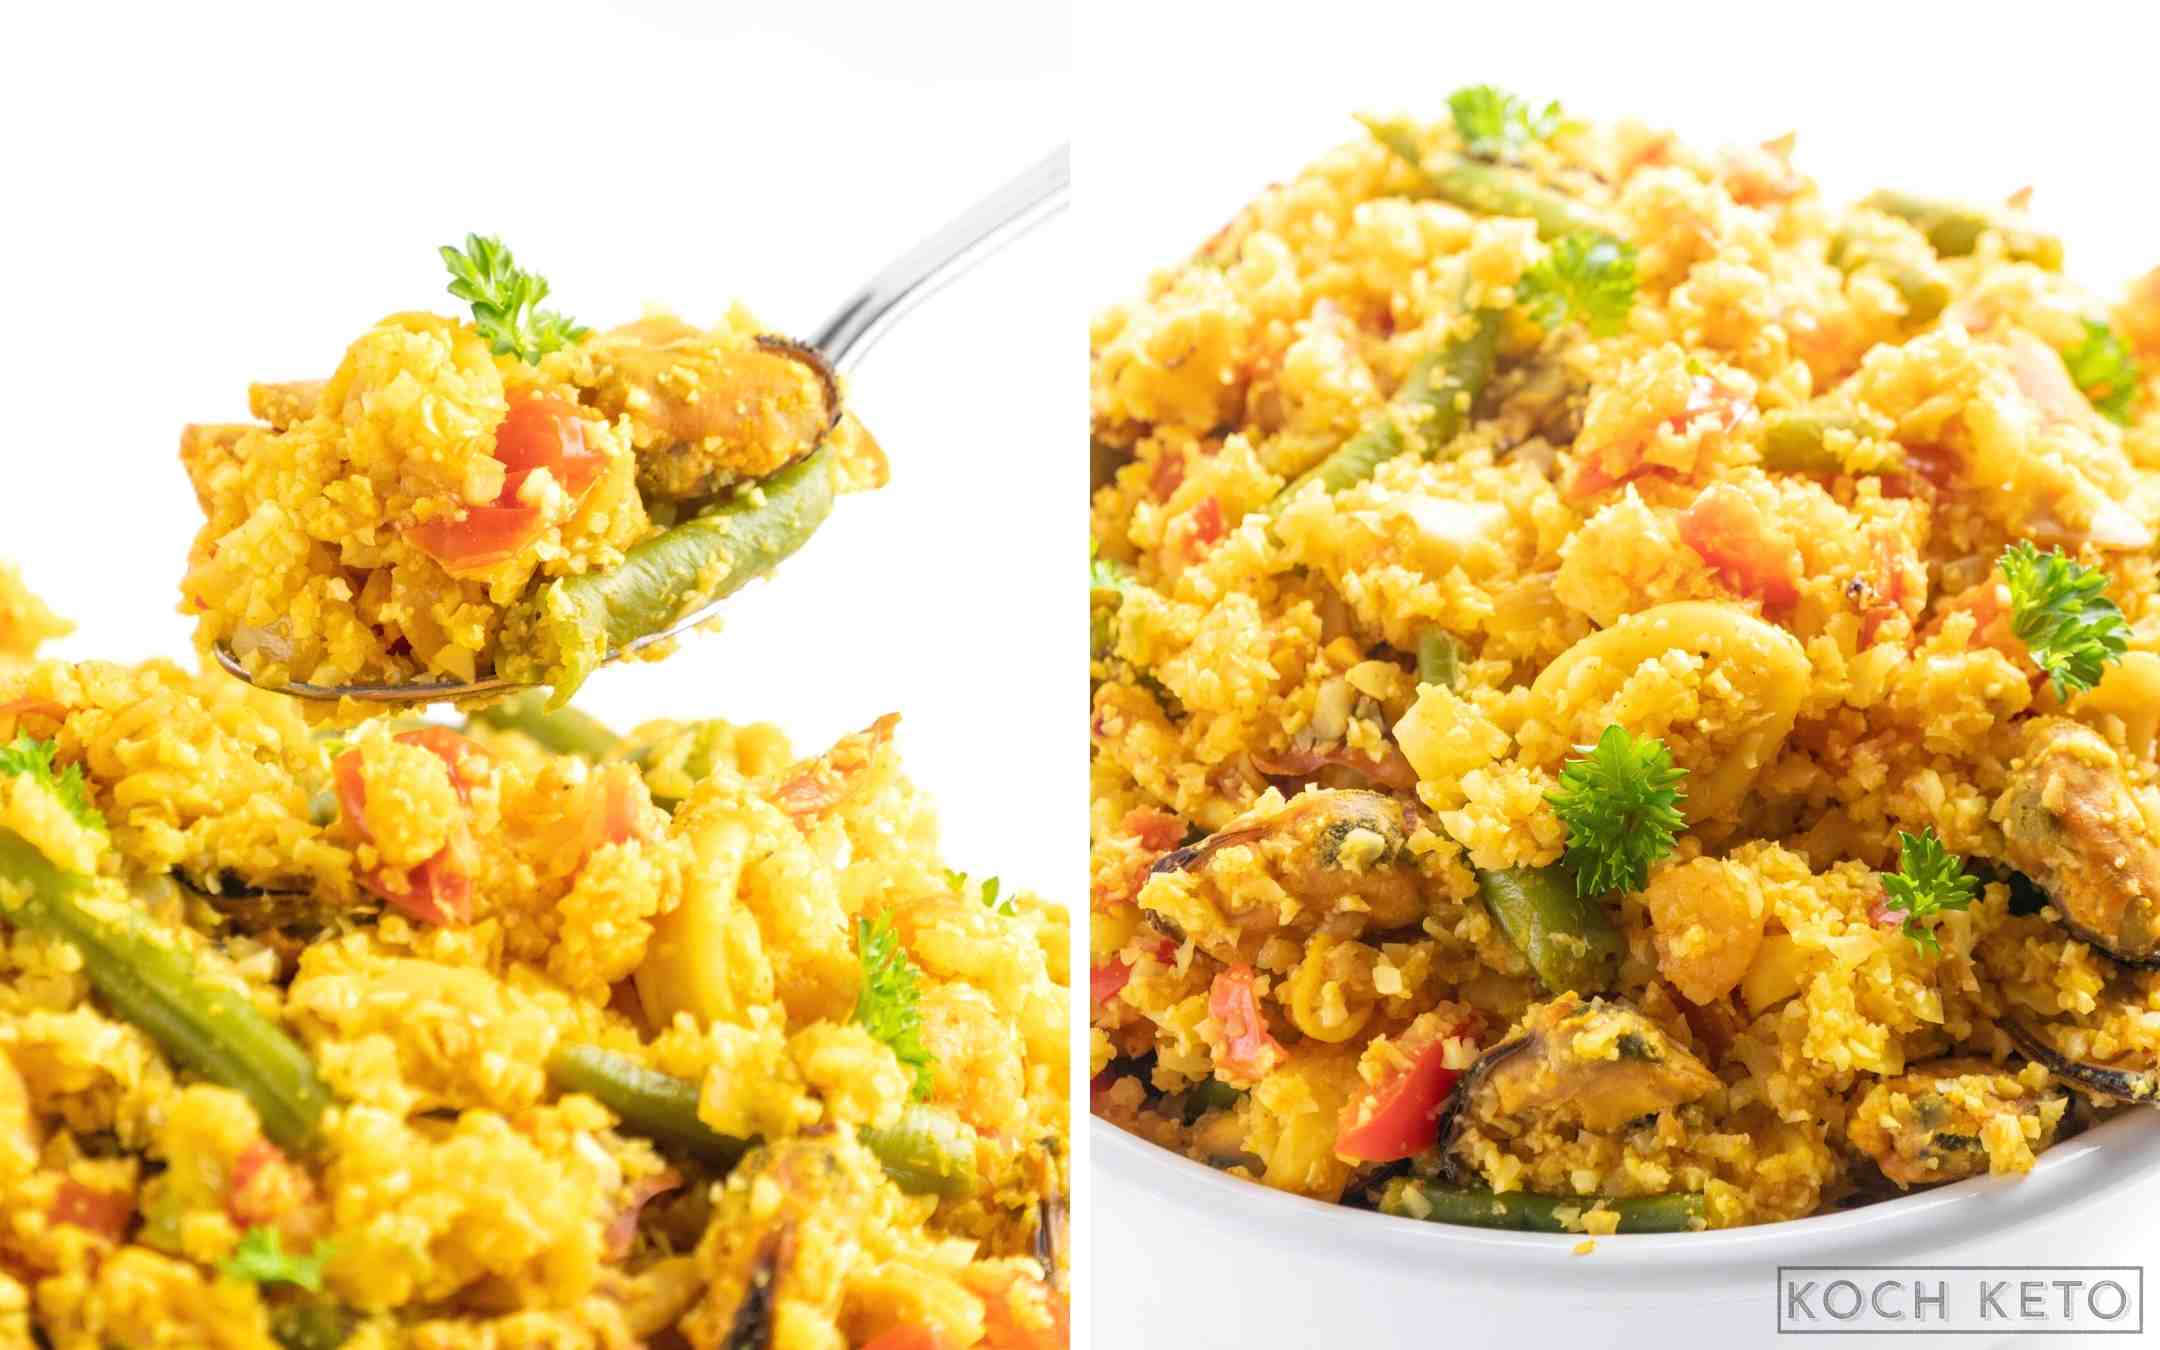 Super einfache Low Carb Paella zum Abnehmen ohne Kohlenhydrate als ketogenes Abendessen Desktop Image Collage